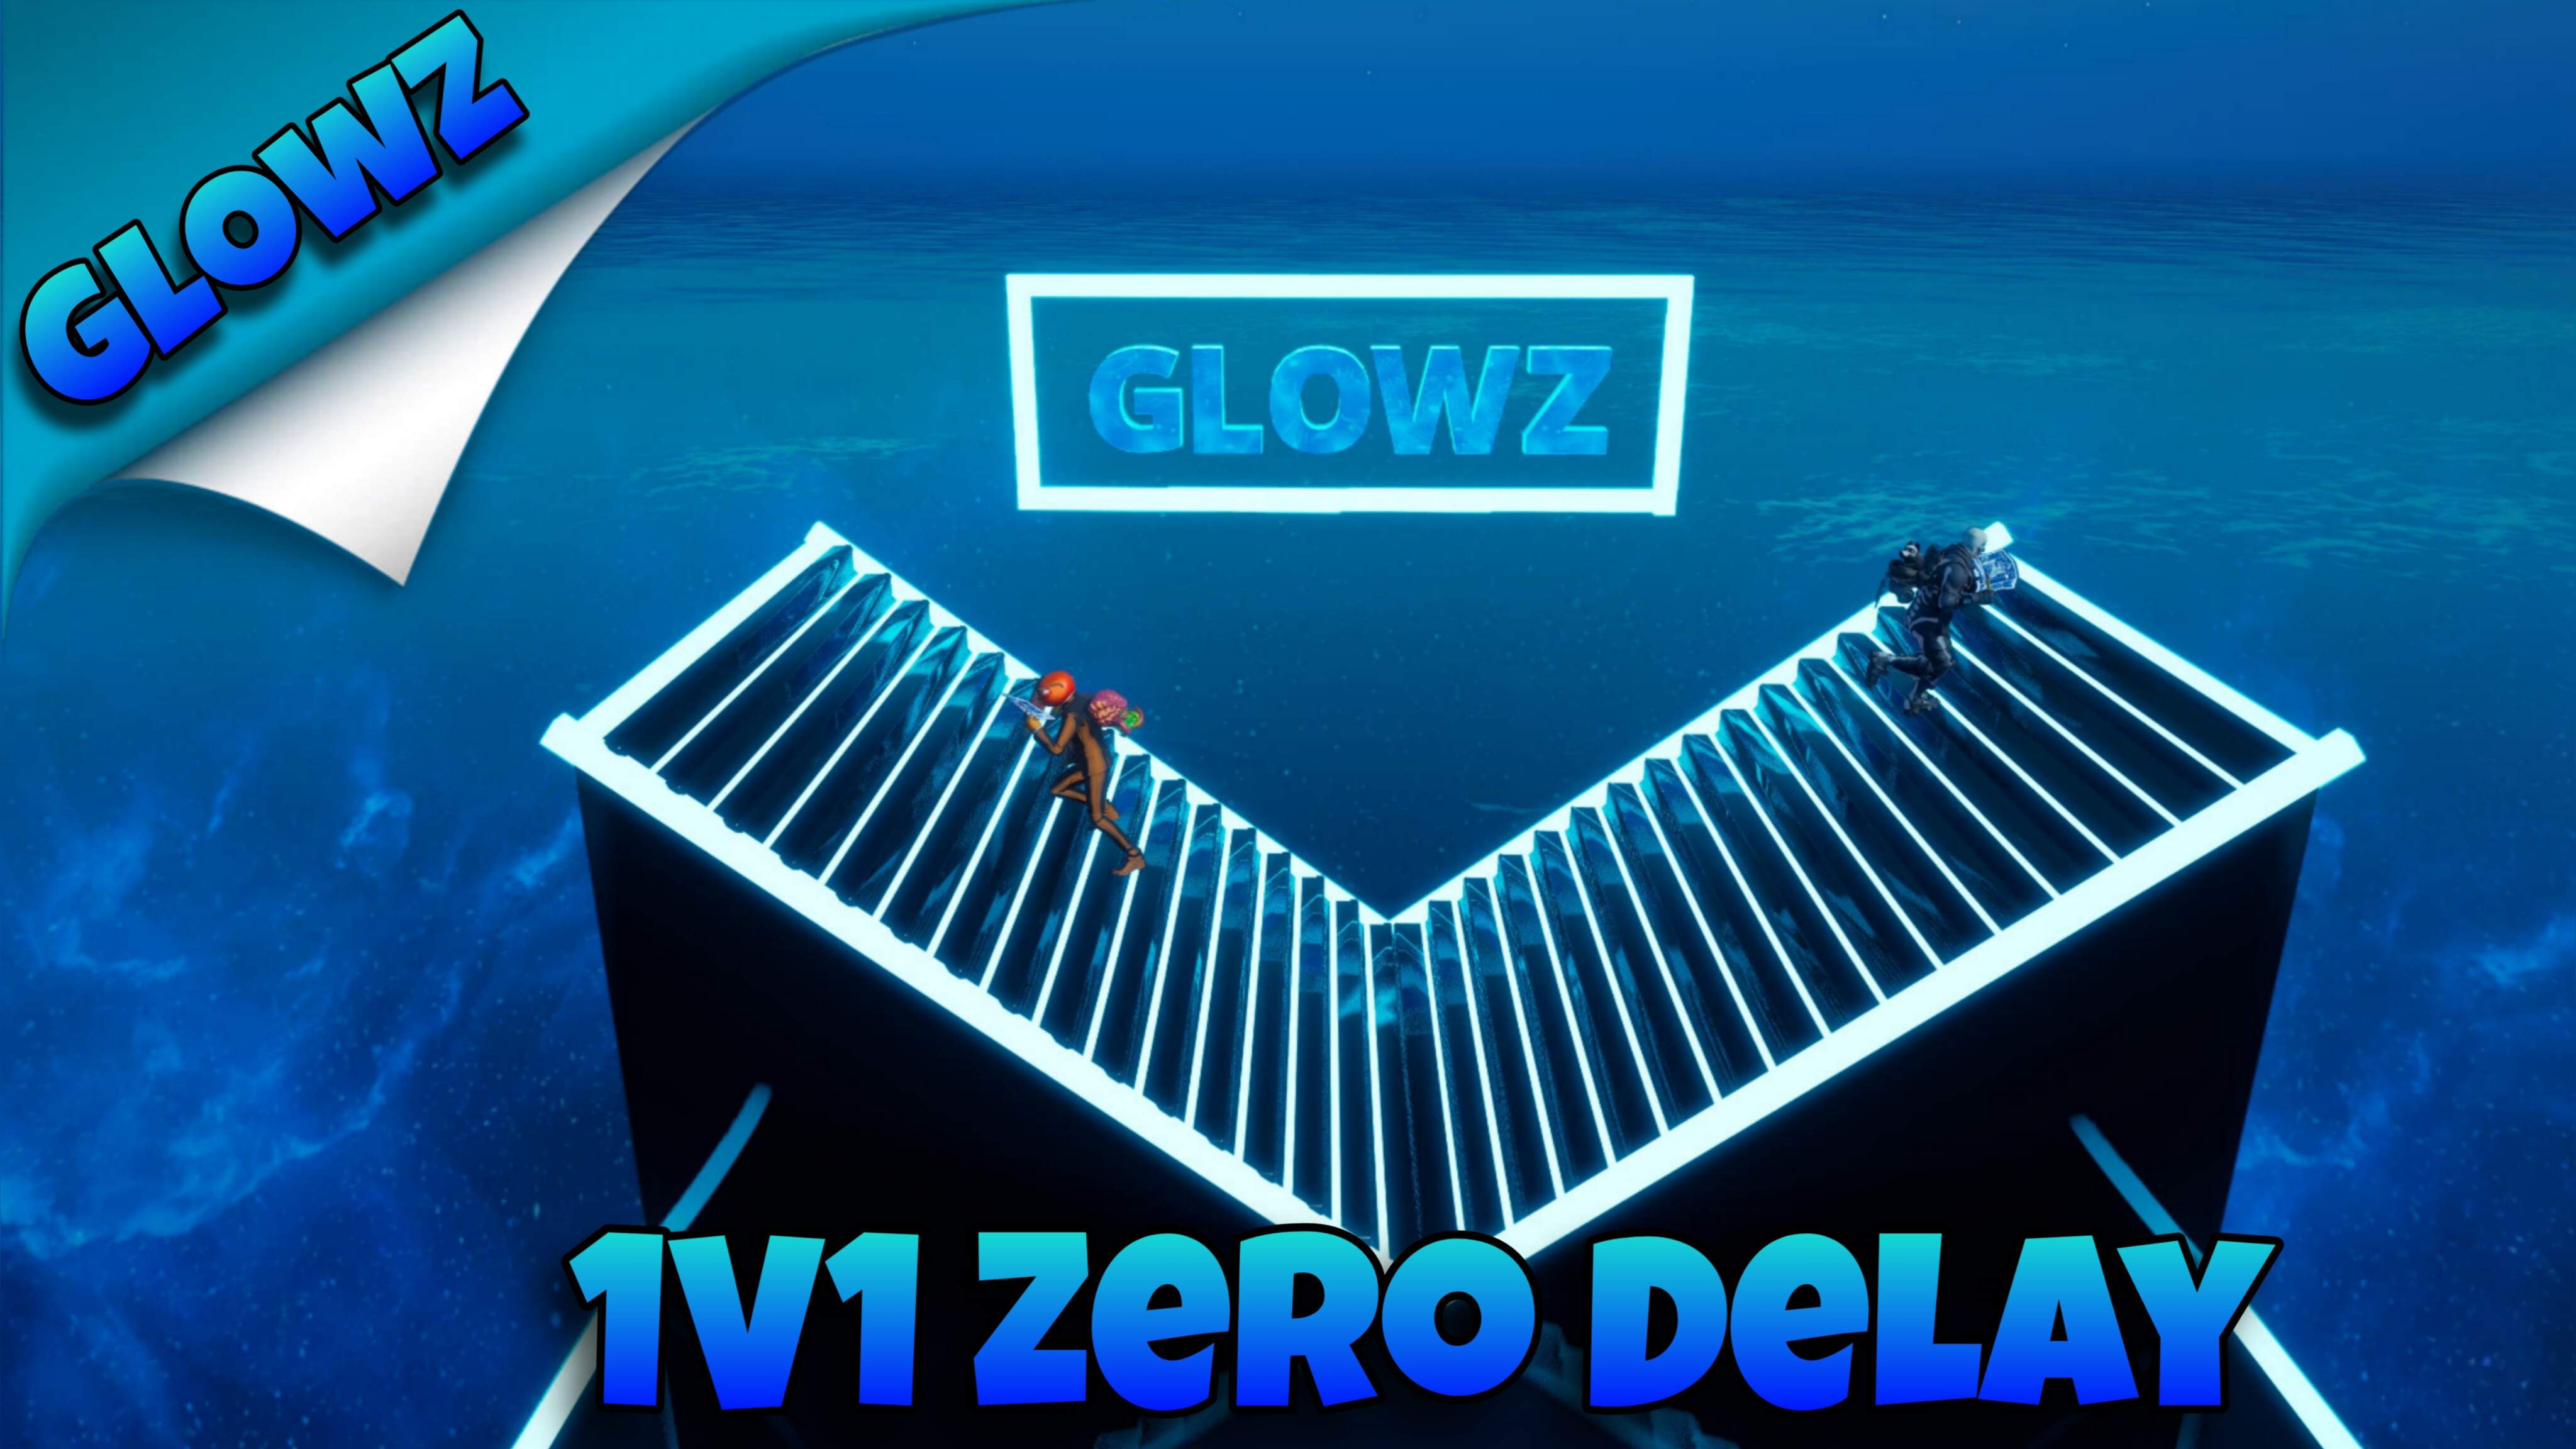 Glowz 1V1 Zero Delay